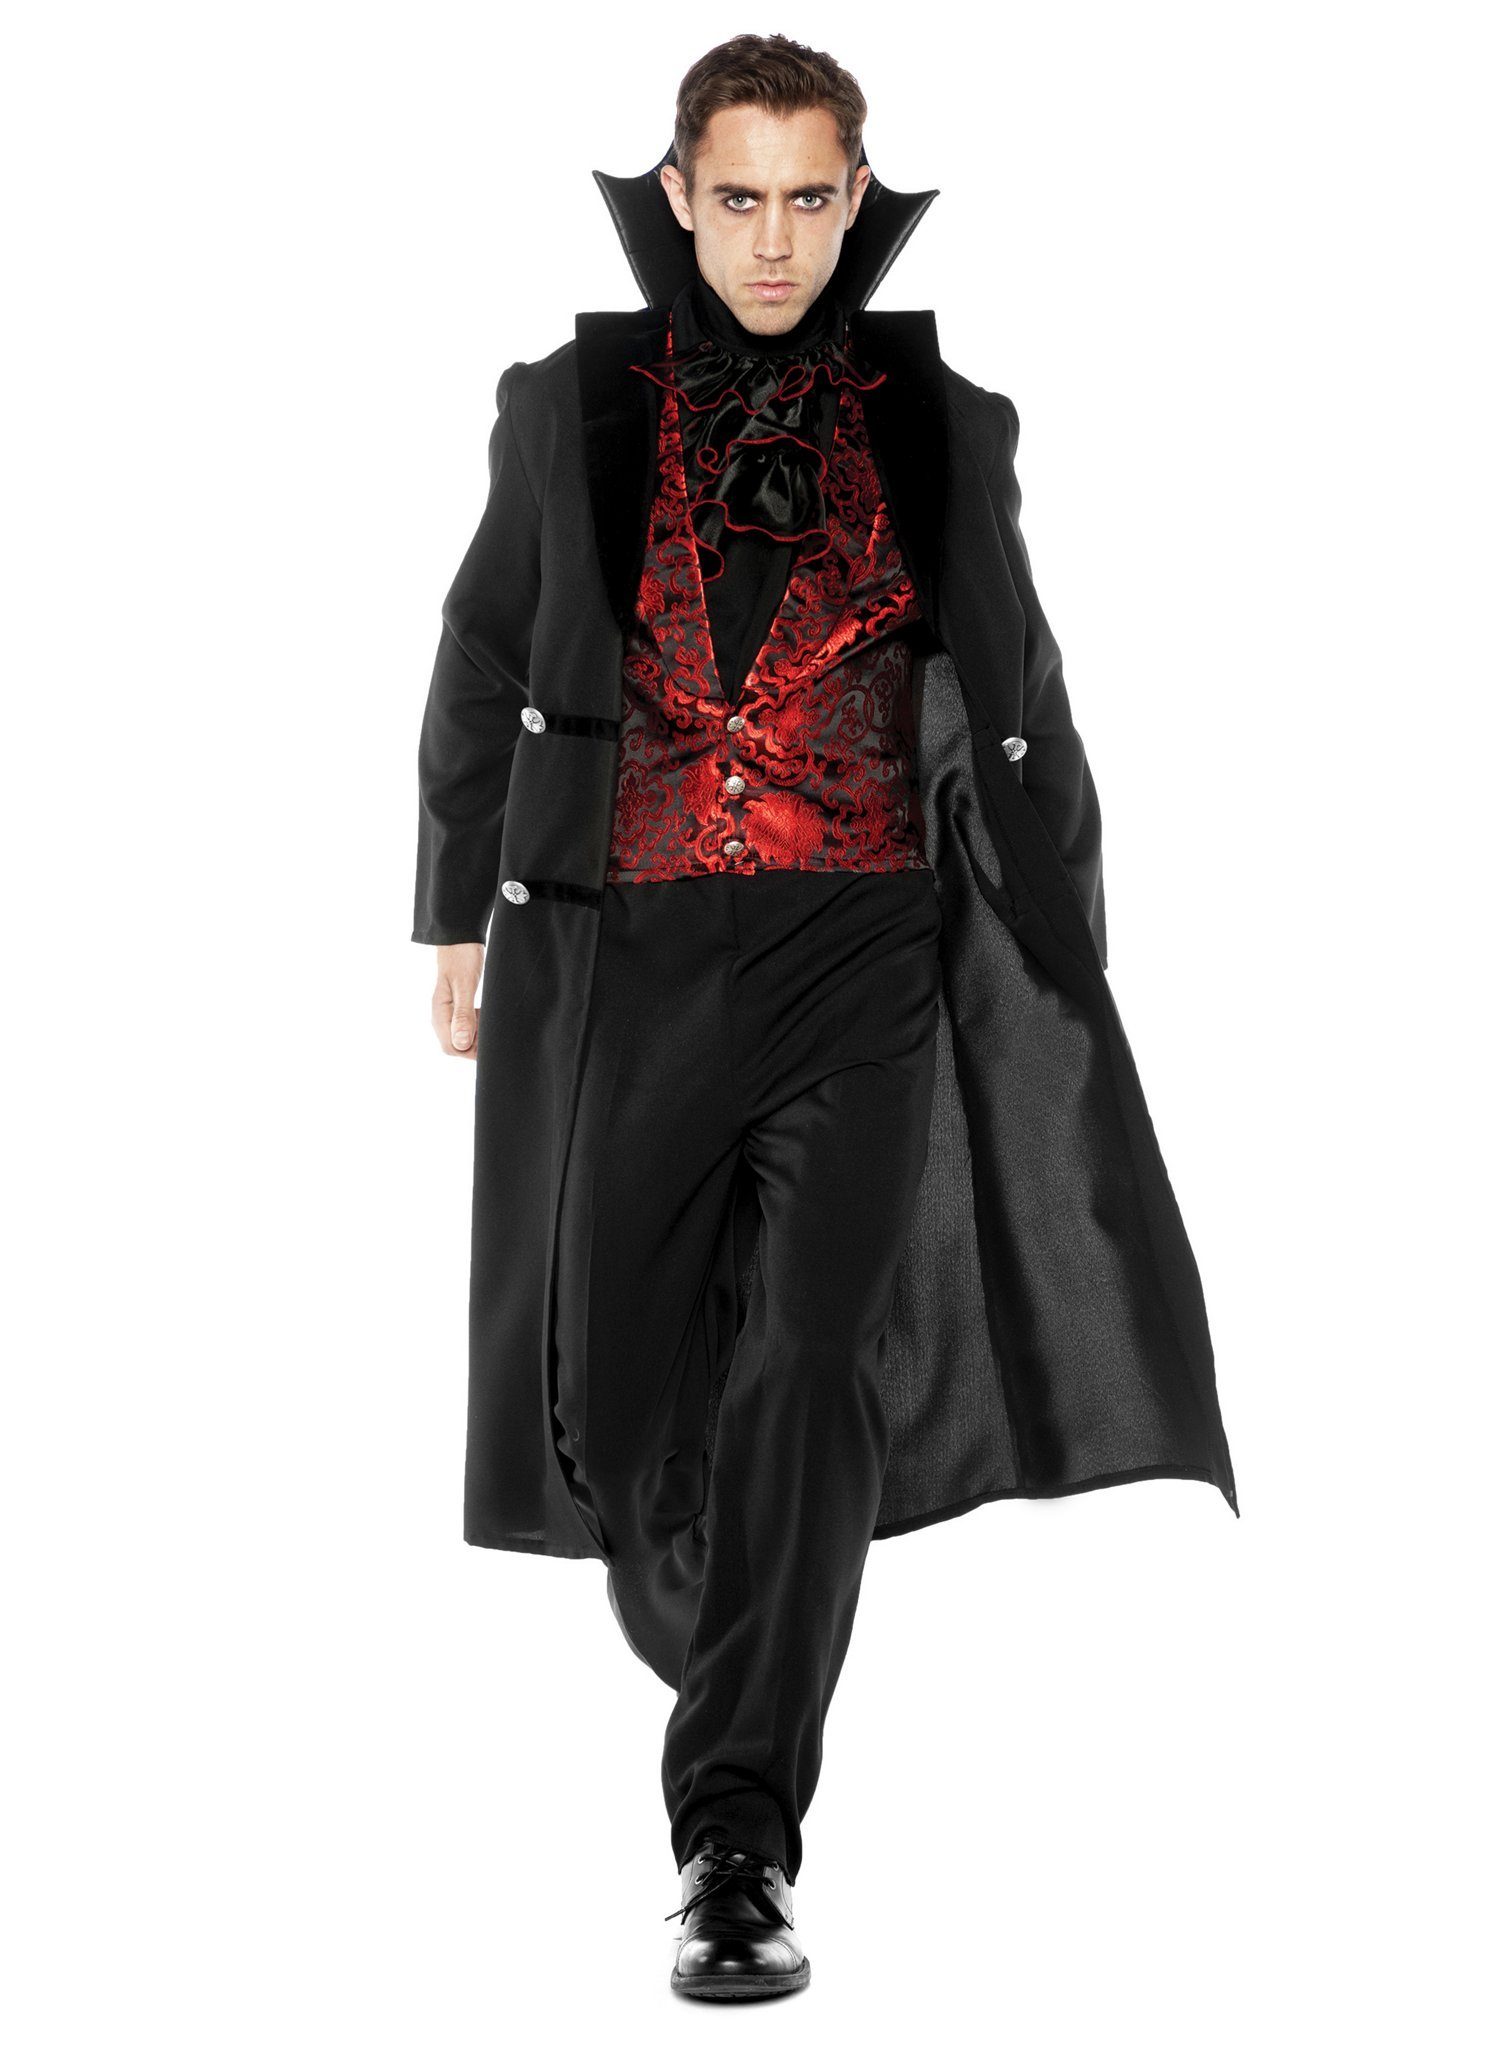 Underwraps Kostüm Gothic Vampirlord Kostüm, Vampirkostüm für barocke Blutsauger